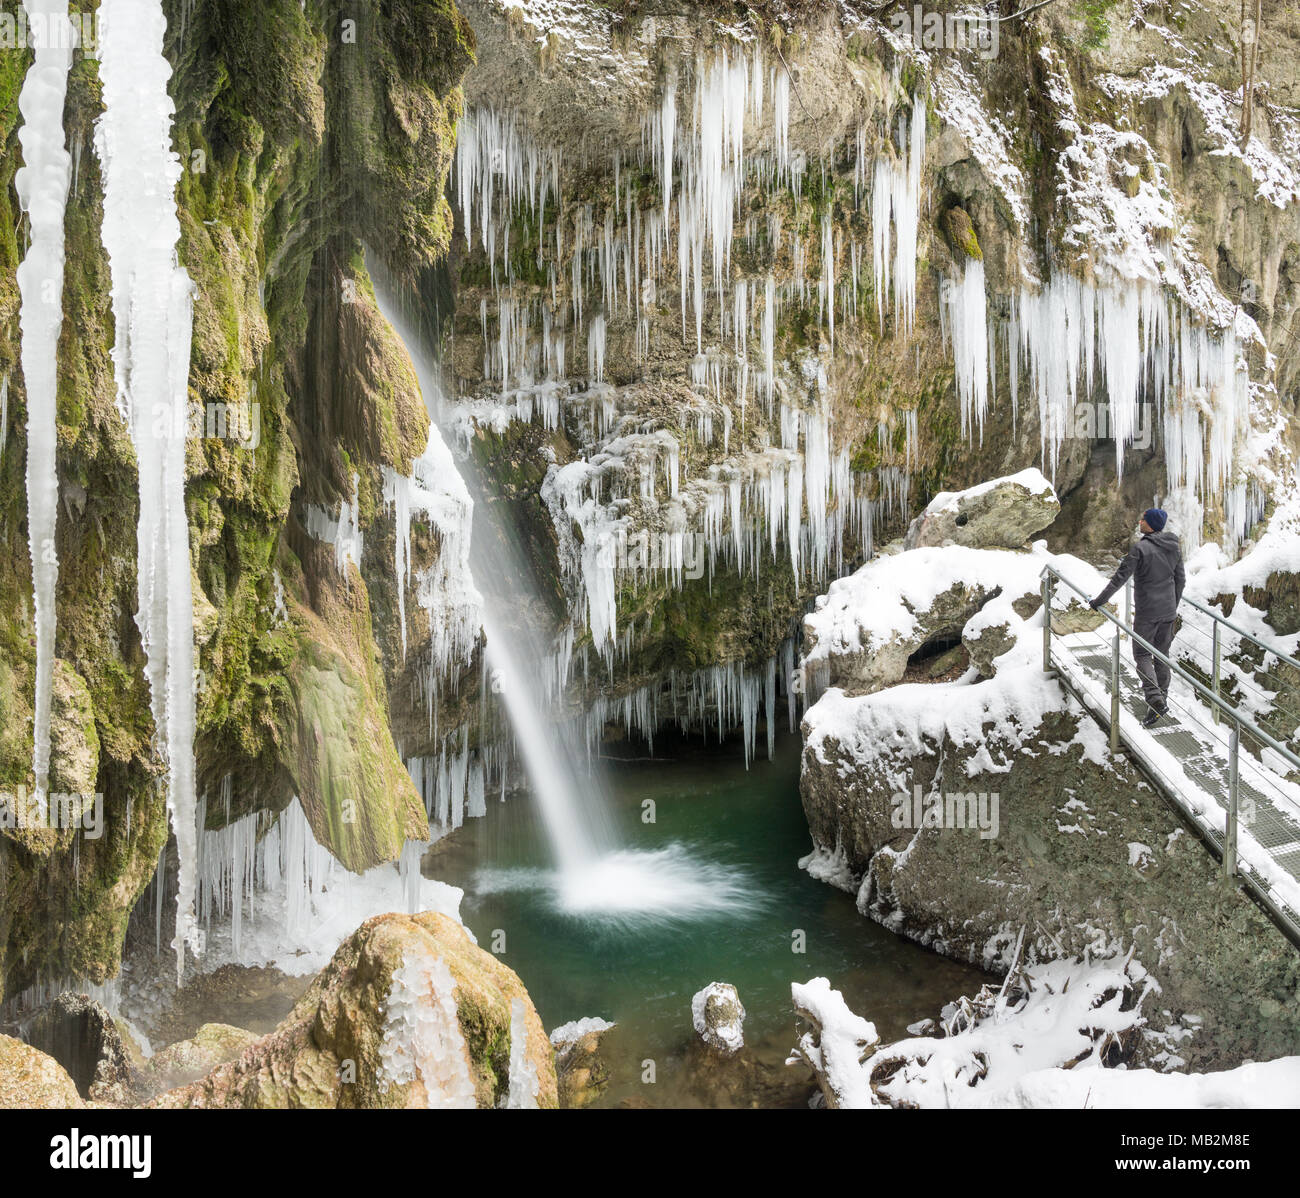 Wanderer Mann stand auf der Brücke genießen Eiszapfen und Wasserfall im Winter Trekking Wanderung. Hinanger Wasserfall, Allgäu, Deutschland. Stockfoto